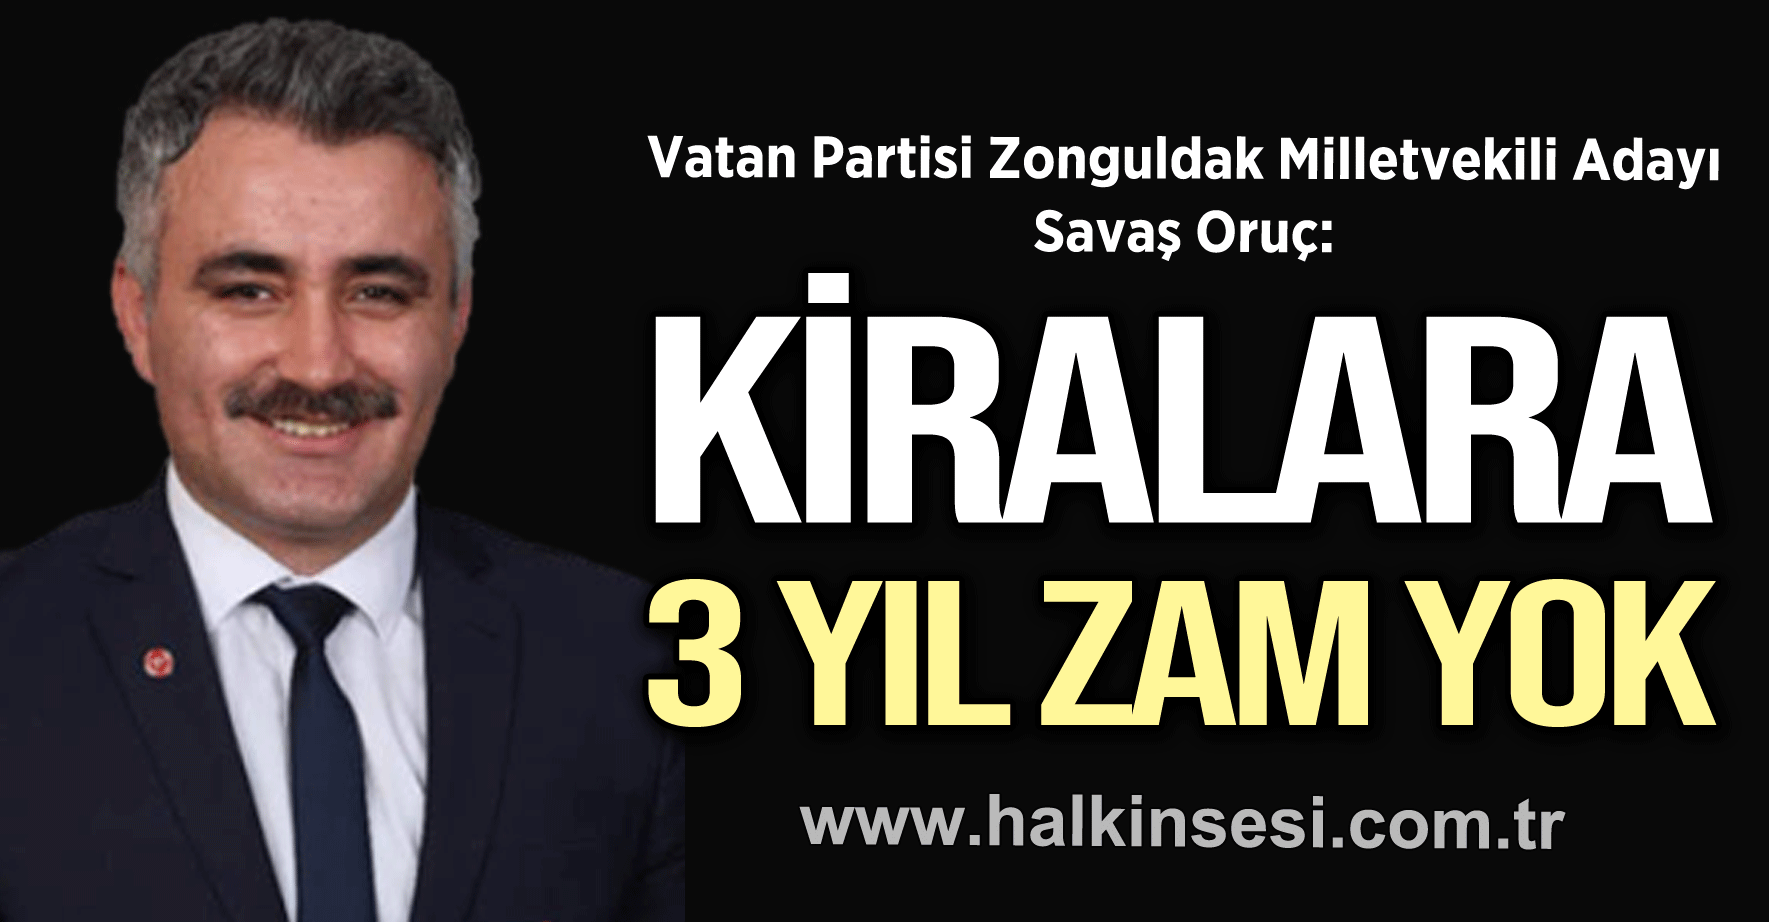 "KİRALARA 3 YIL ZAM YOK"